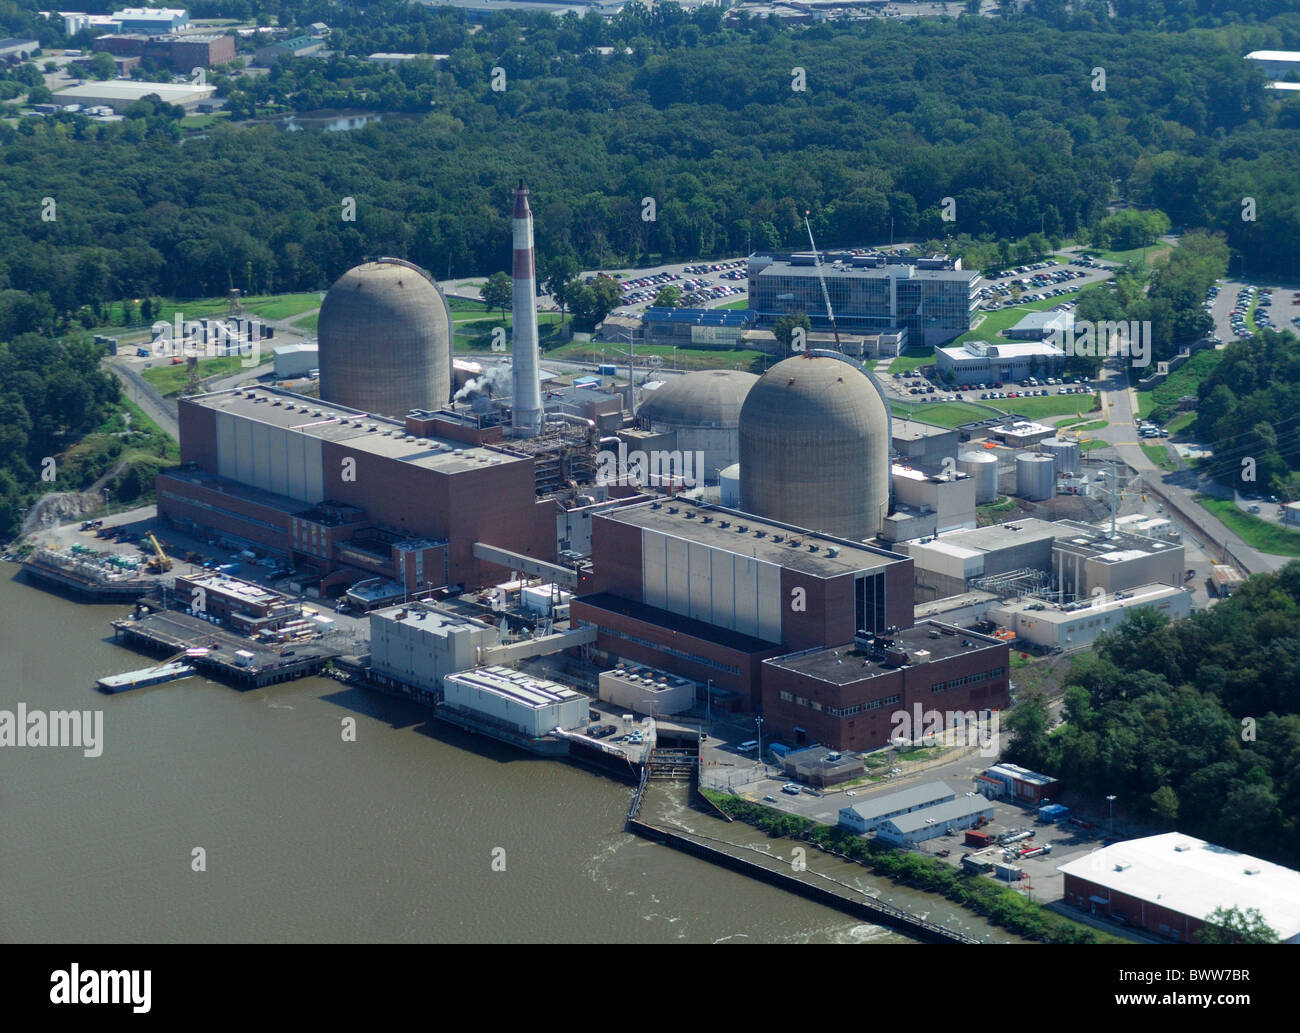 Vista aérea de la central nuclear Indian Point Energy Center en el río Hudson, Buchanan, estado de Nueva York, EE.UU. Foto de stock